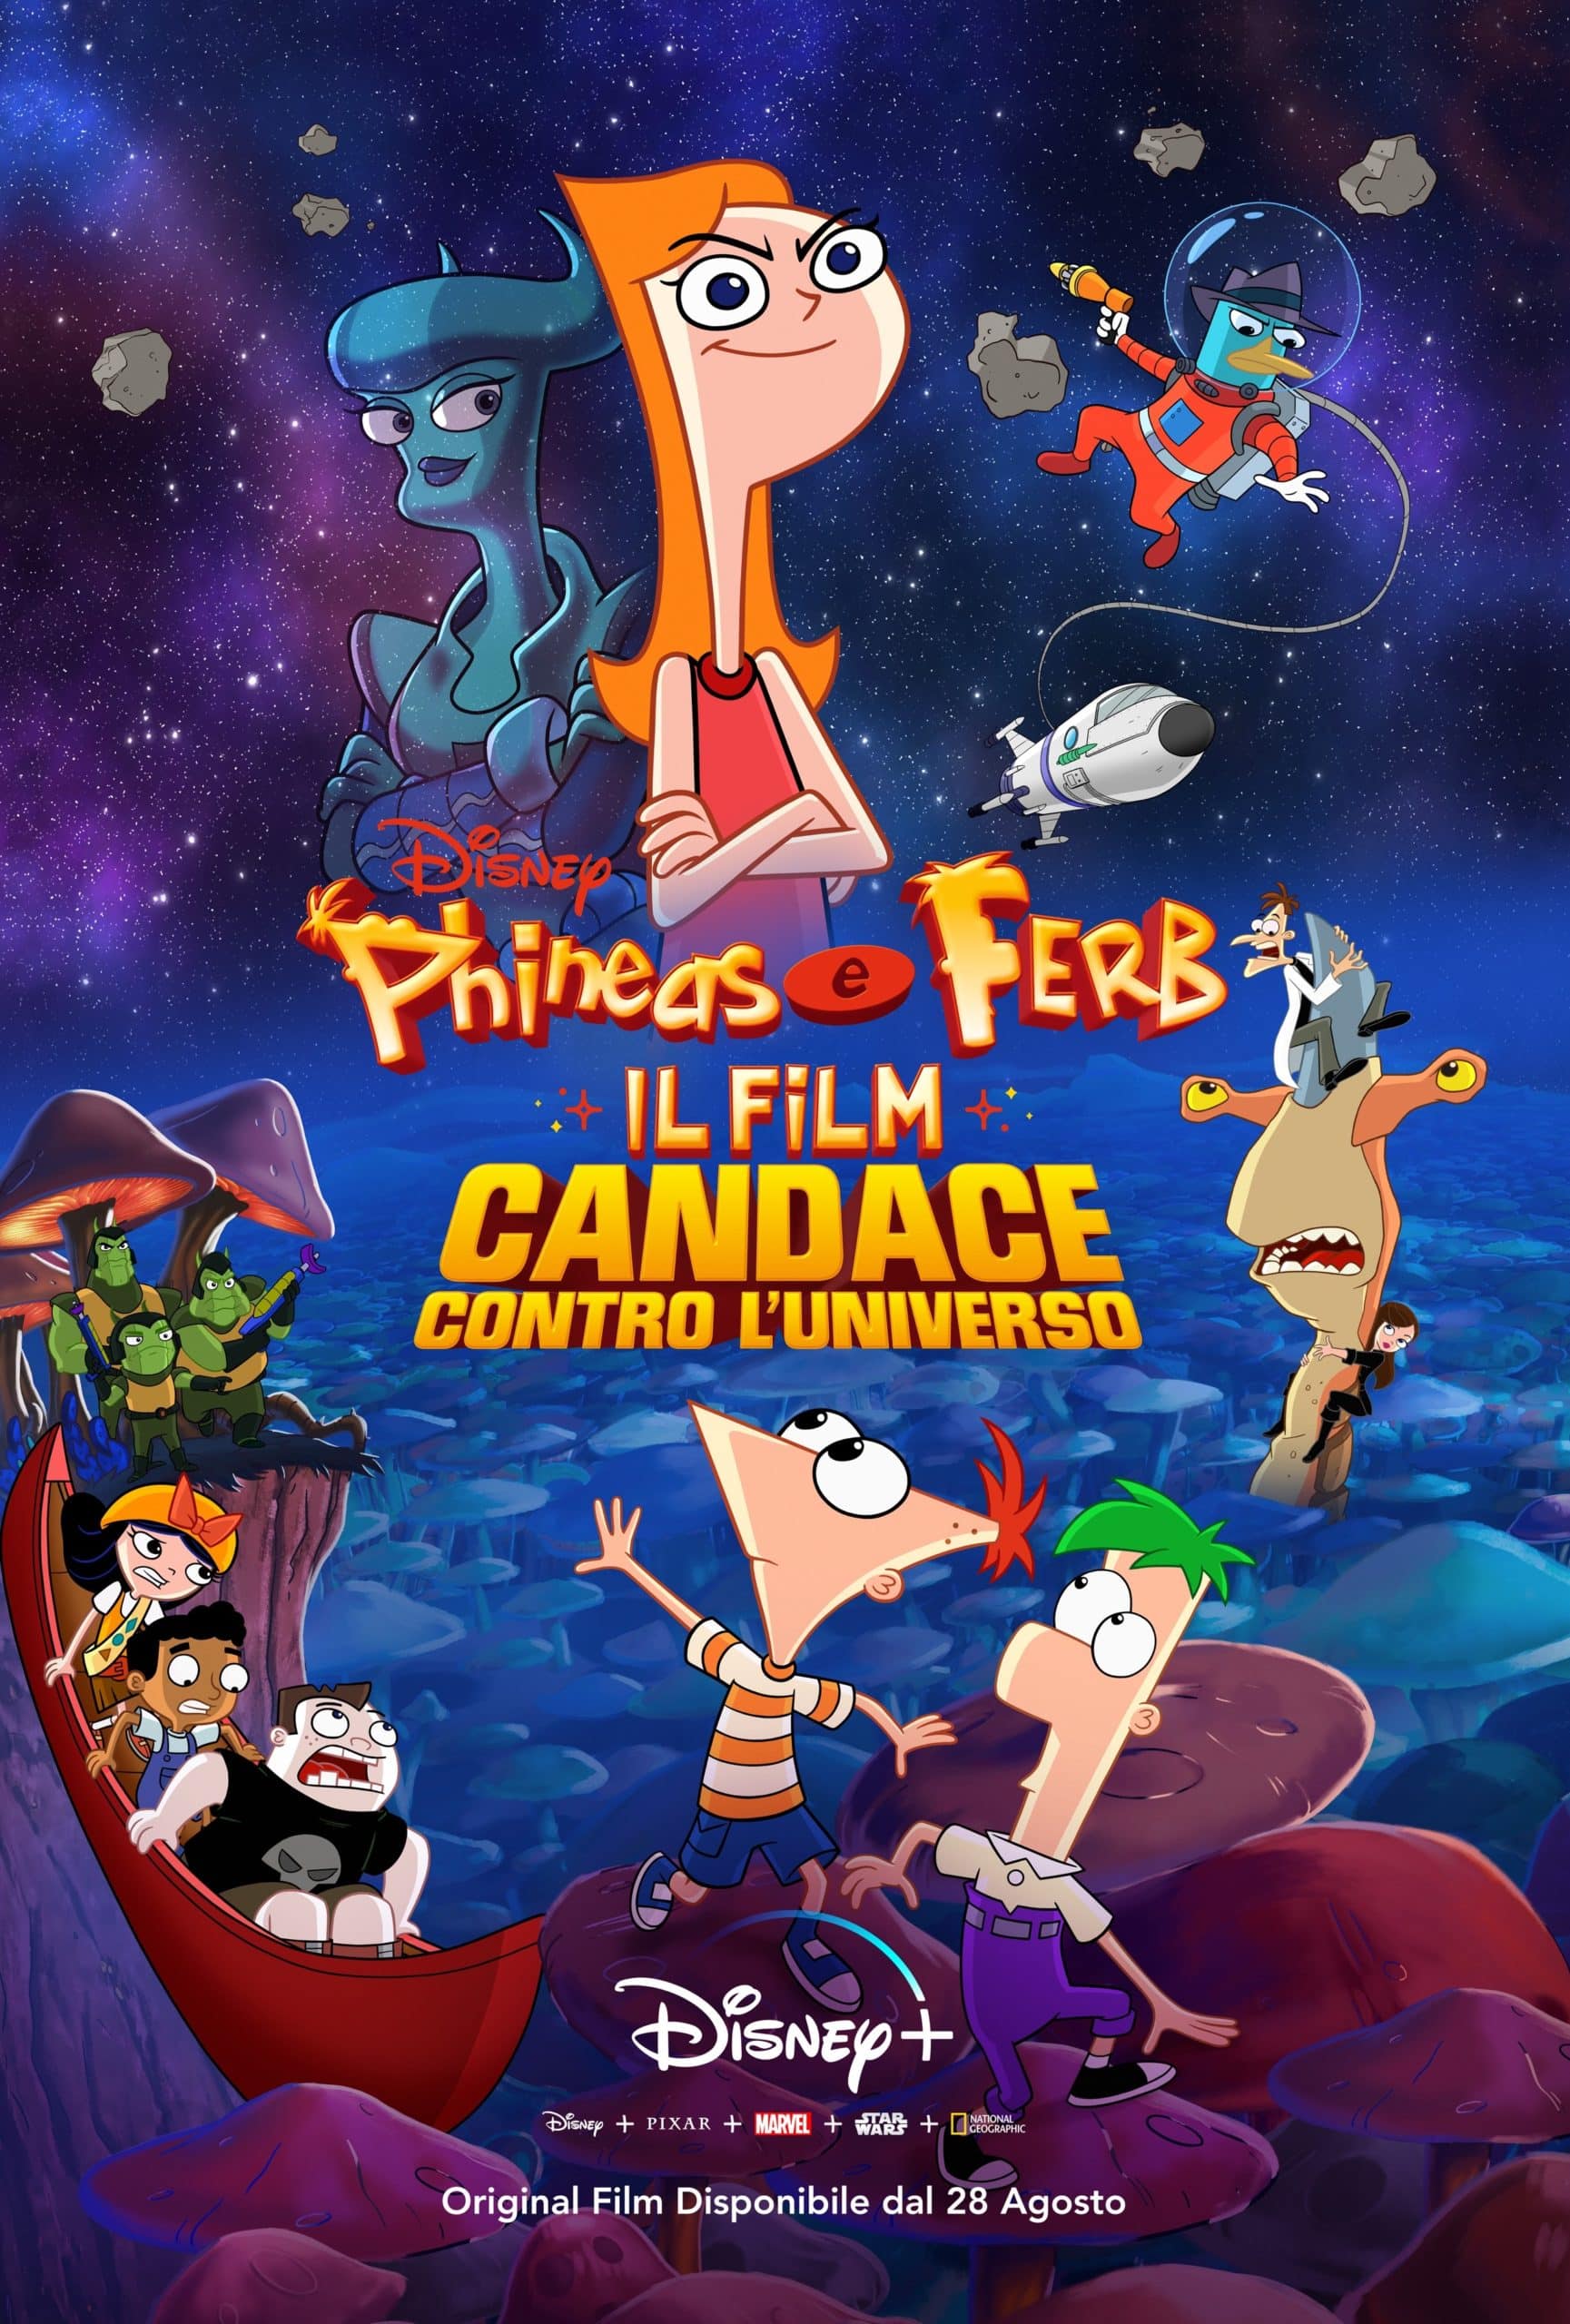 Disney Plus 2020 - Phineas e Ferd il film